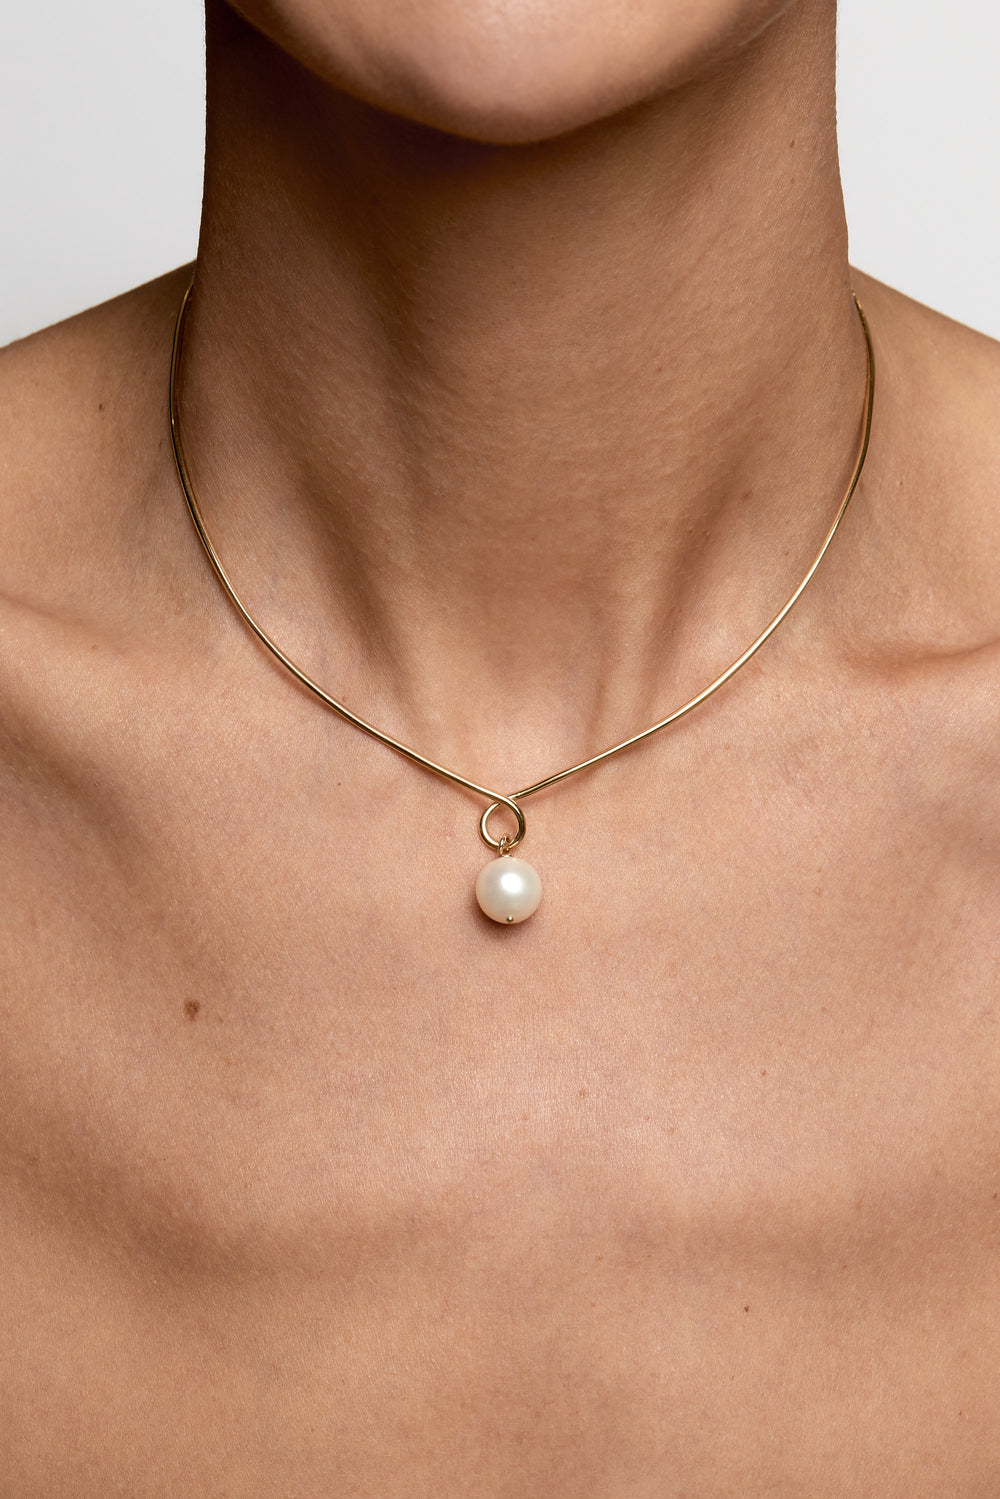 Omega Loop Necklace | 9K White Gold, Customise| Natasha Schweitzer